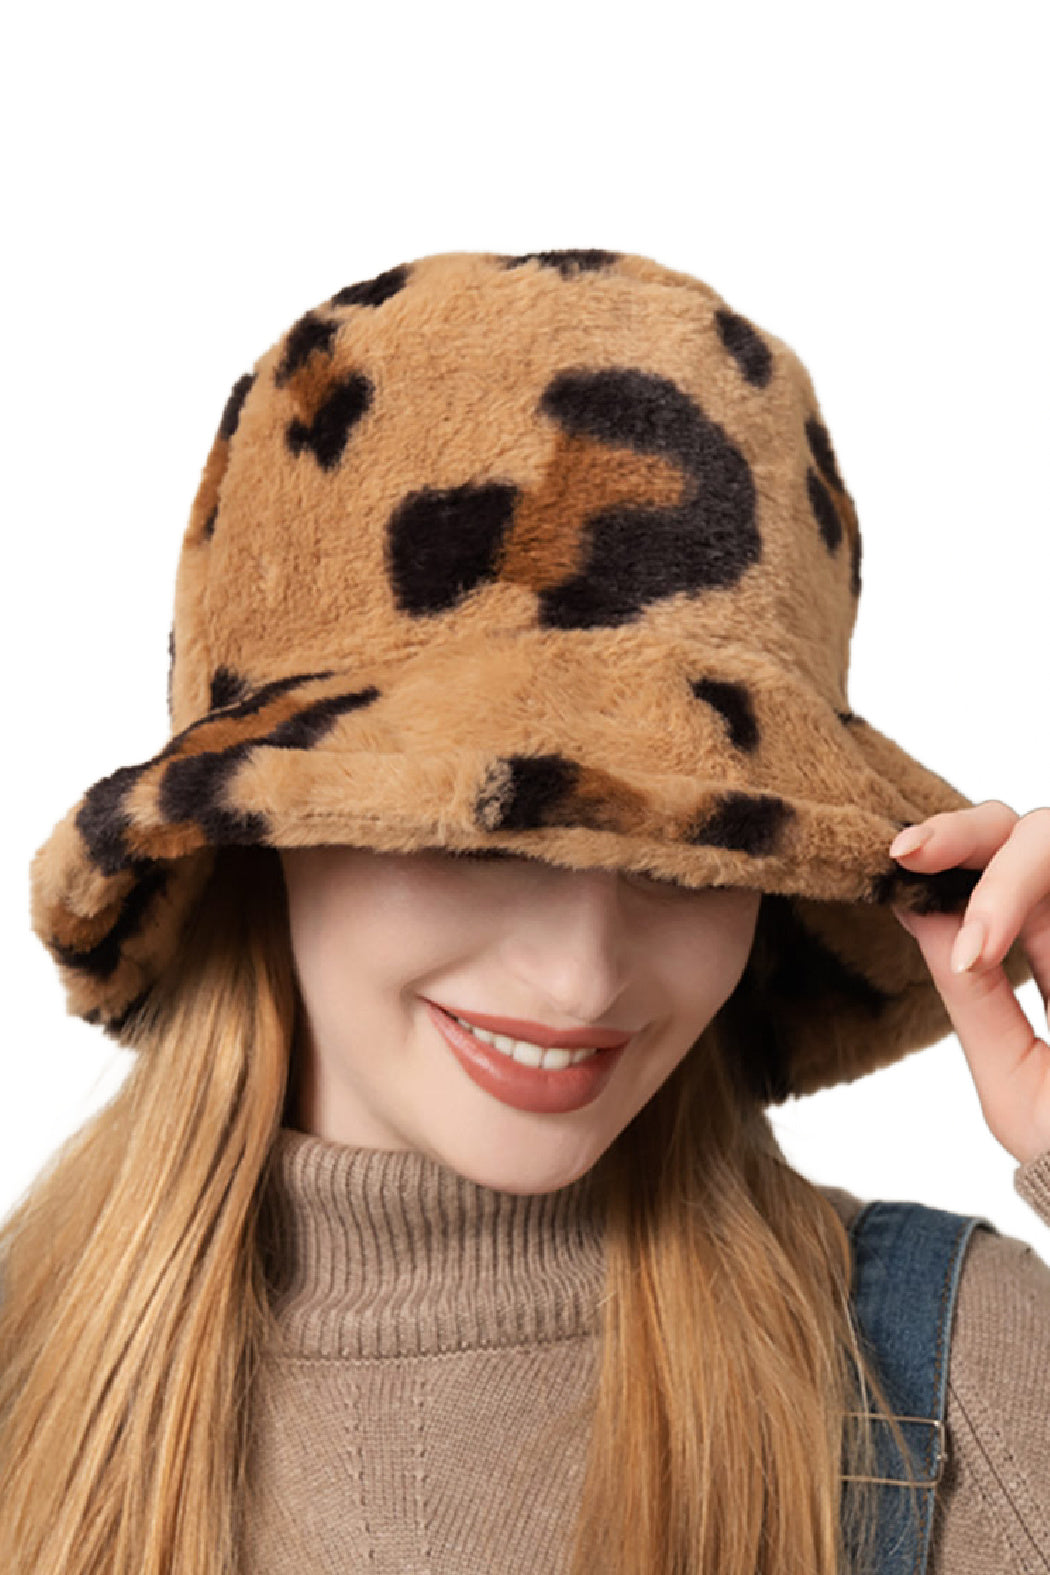 Leopard Faux Fur Bucket Hat